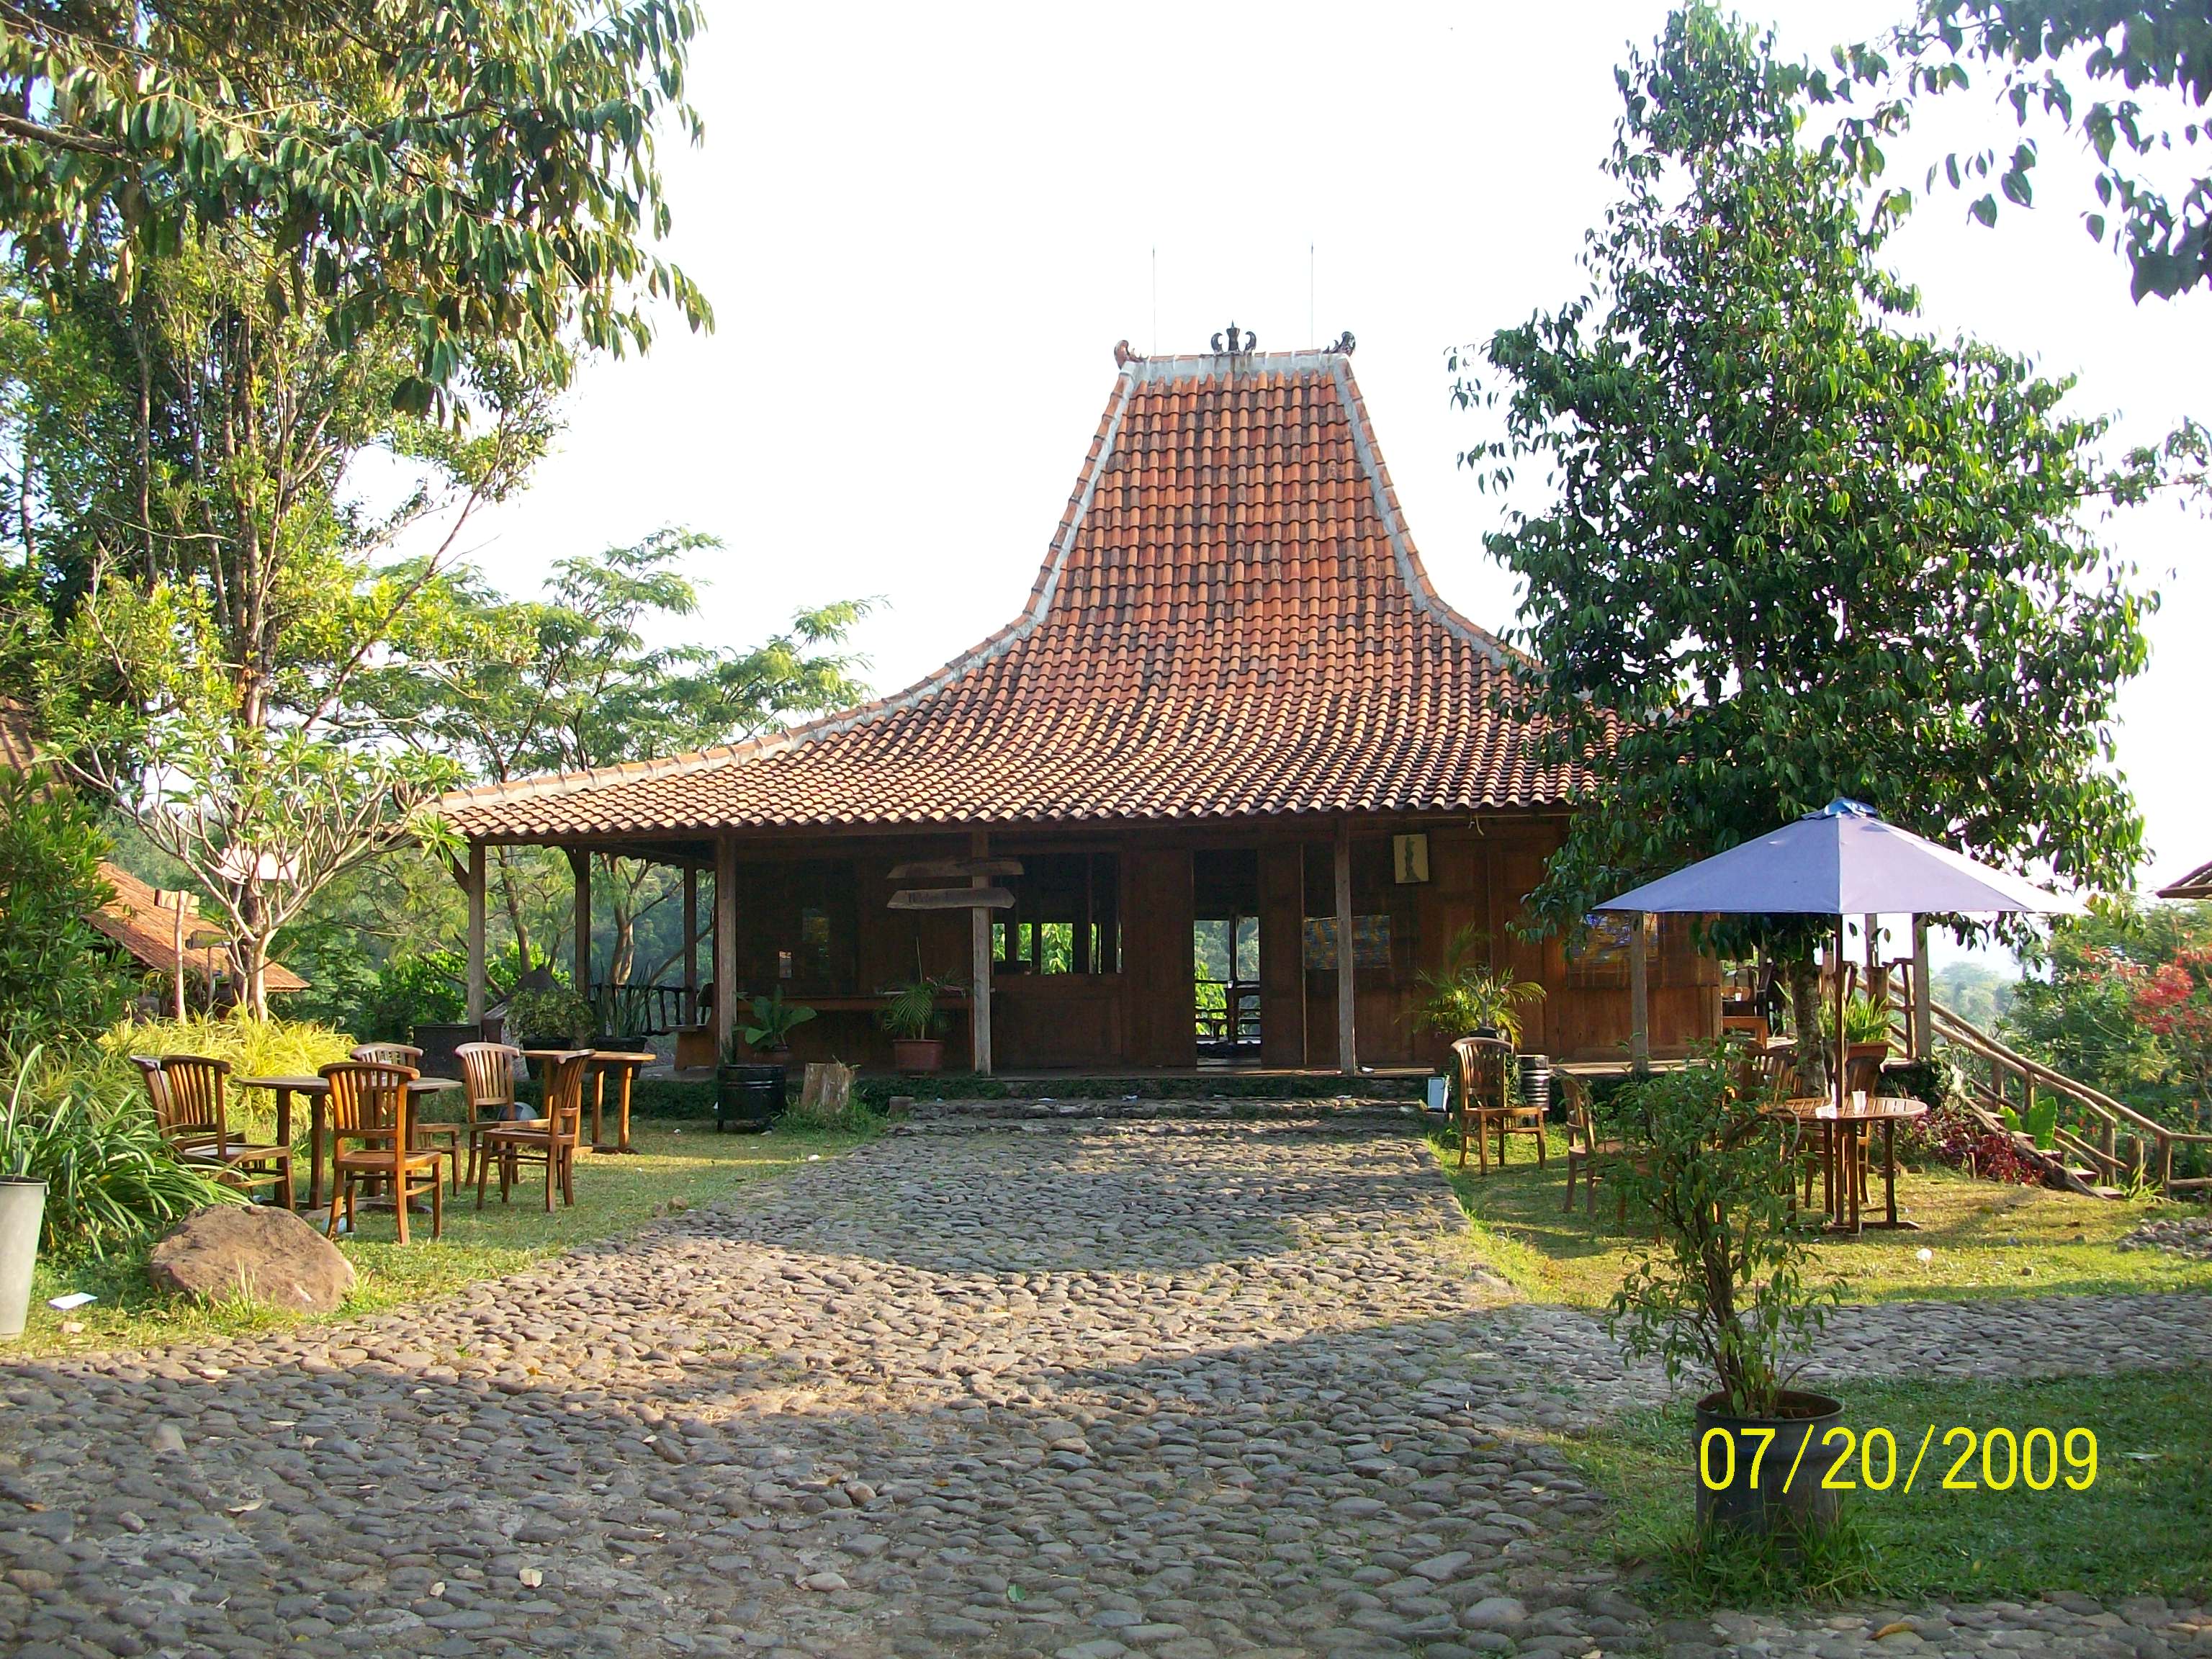  Rumah  Adat  Joglo Jawa  Timur  Wikipedia Rumah  XY